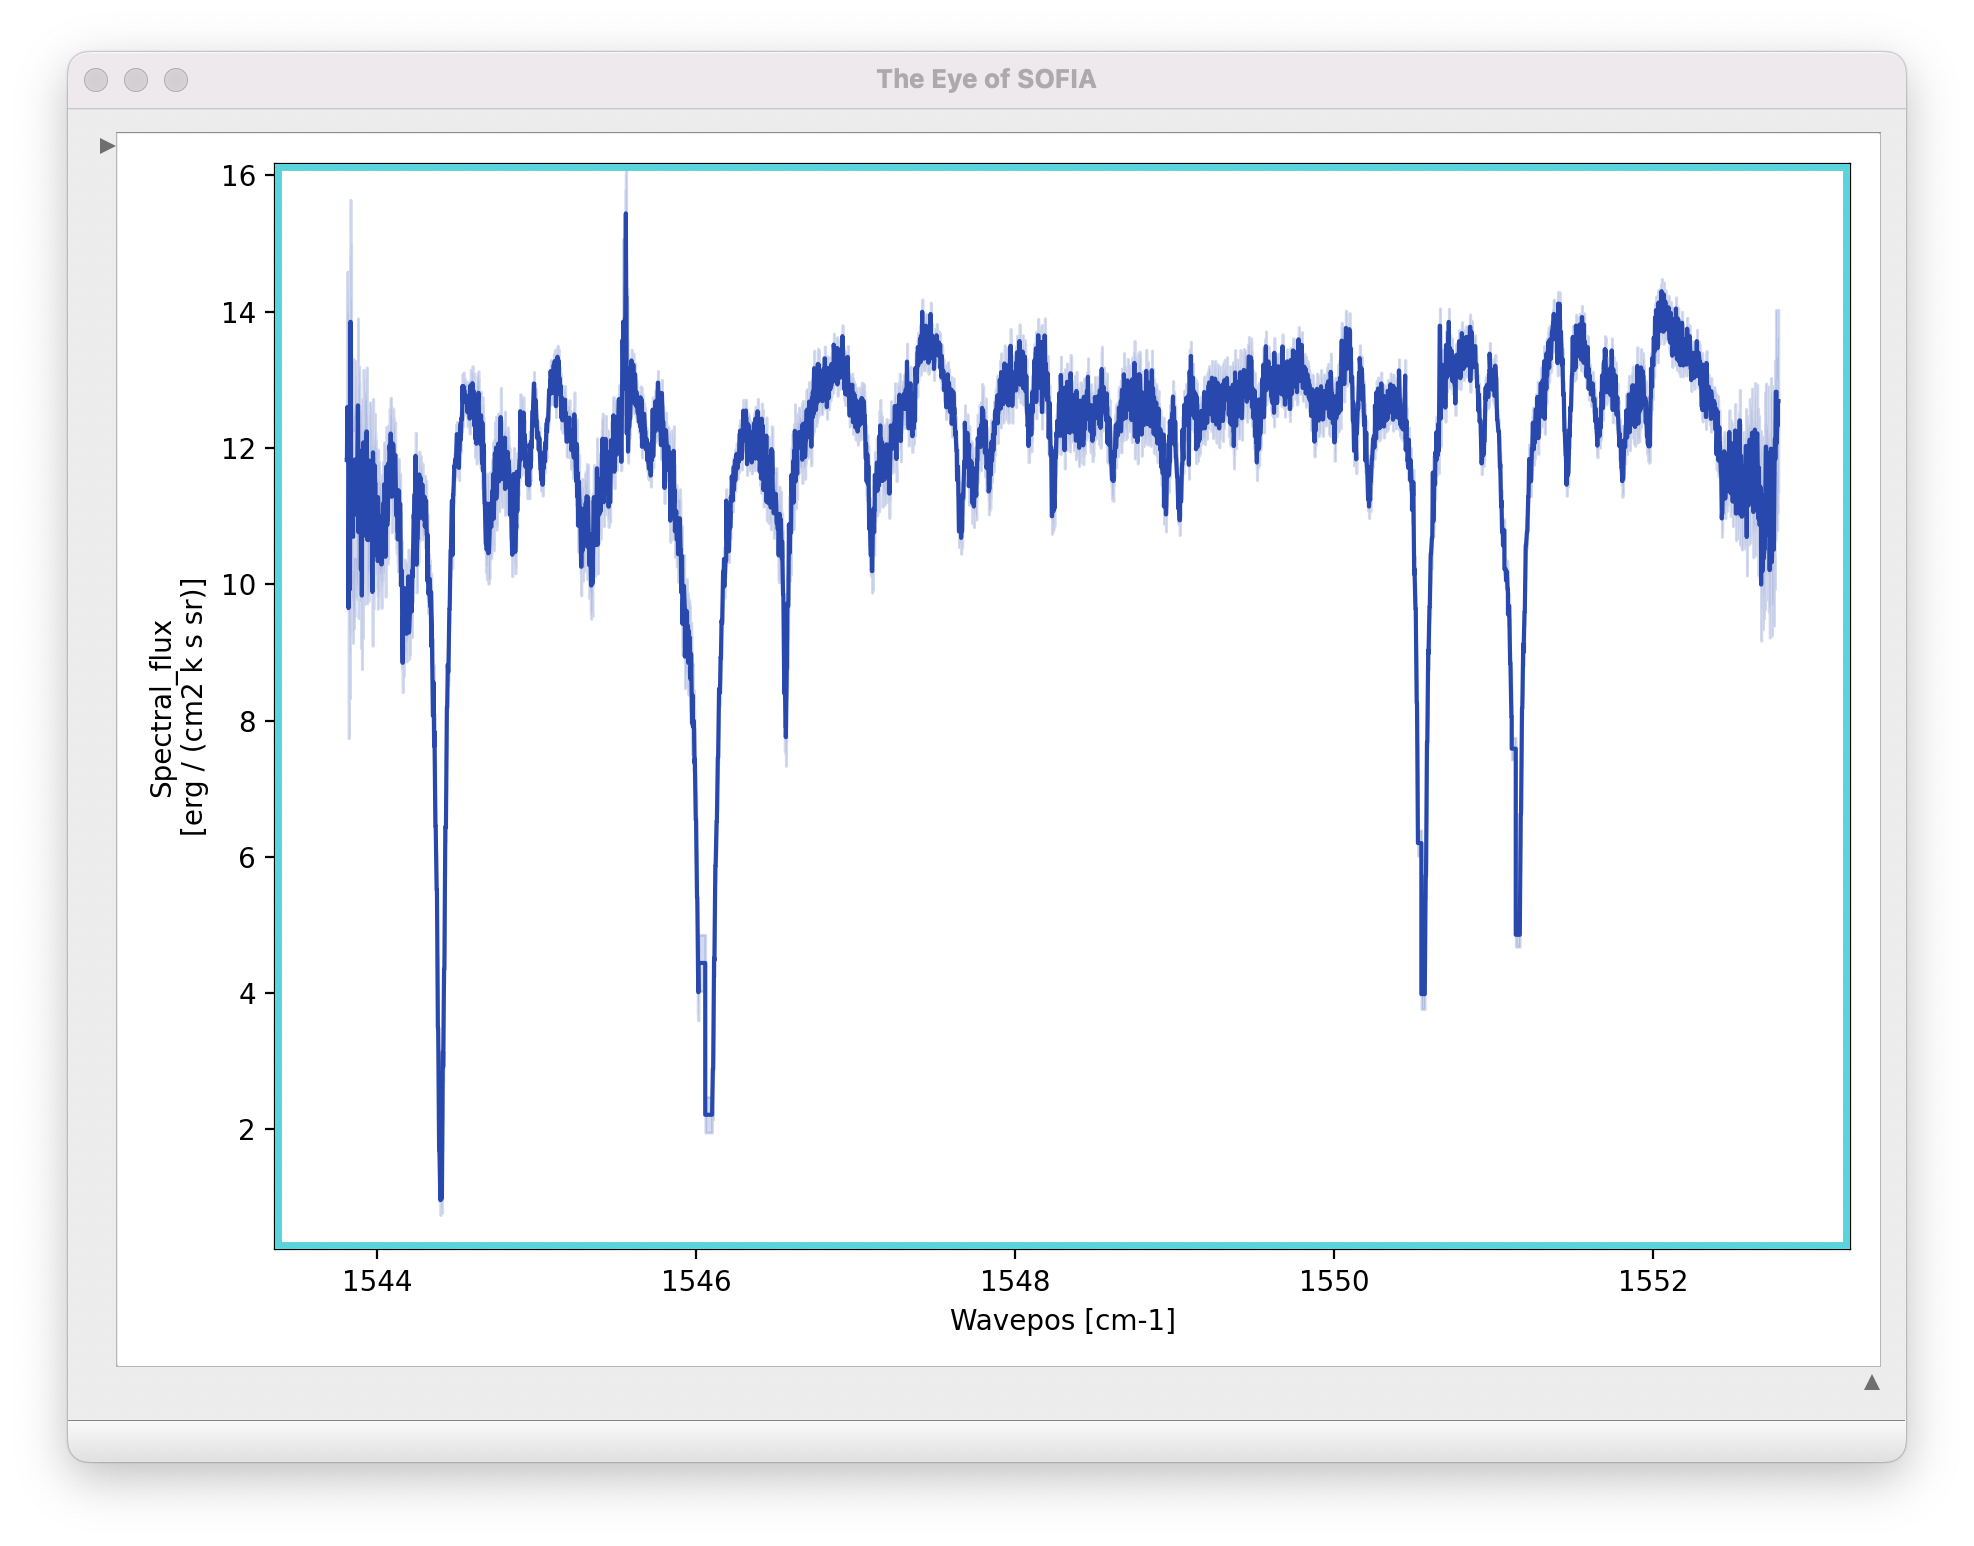 A GUI window showing a spectral plot, in Wavepos (cm-1) vs. Spectral_flux (erg/cm2 k s sr).